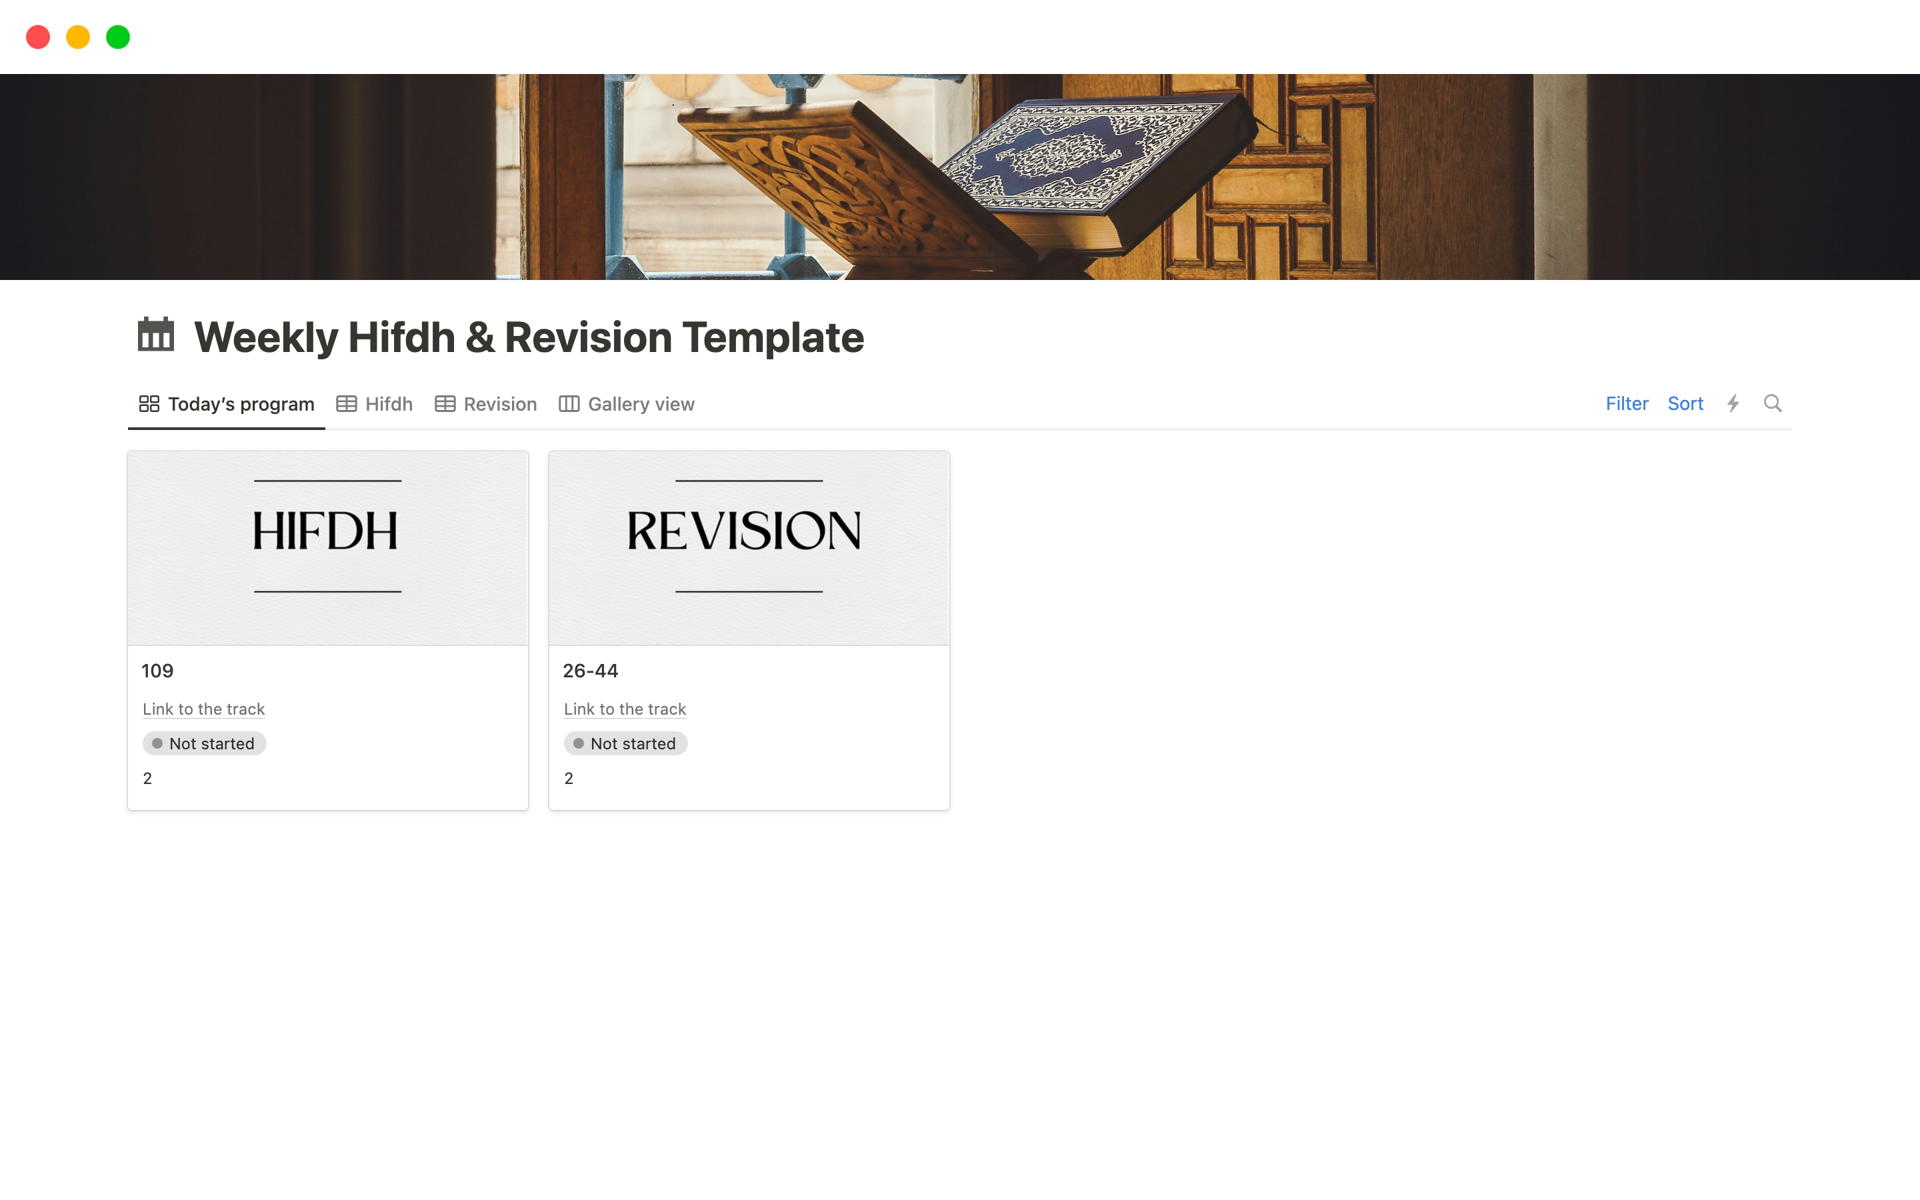 Vista previa de una plantilla para Weekly Quran Hifdh & Revision Planner